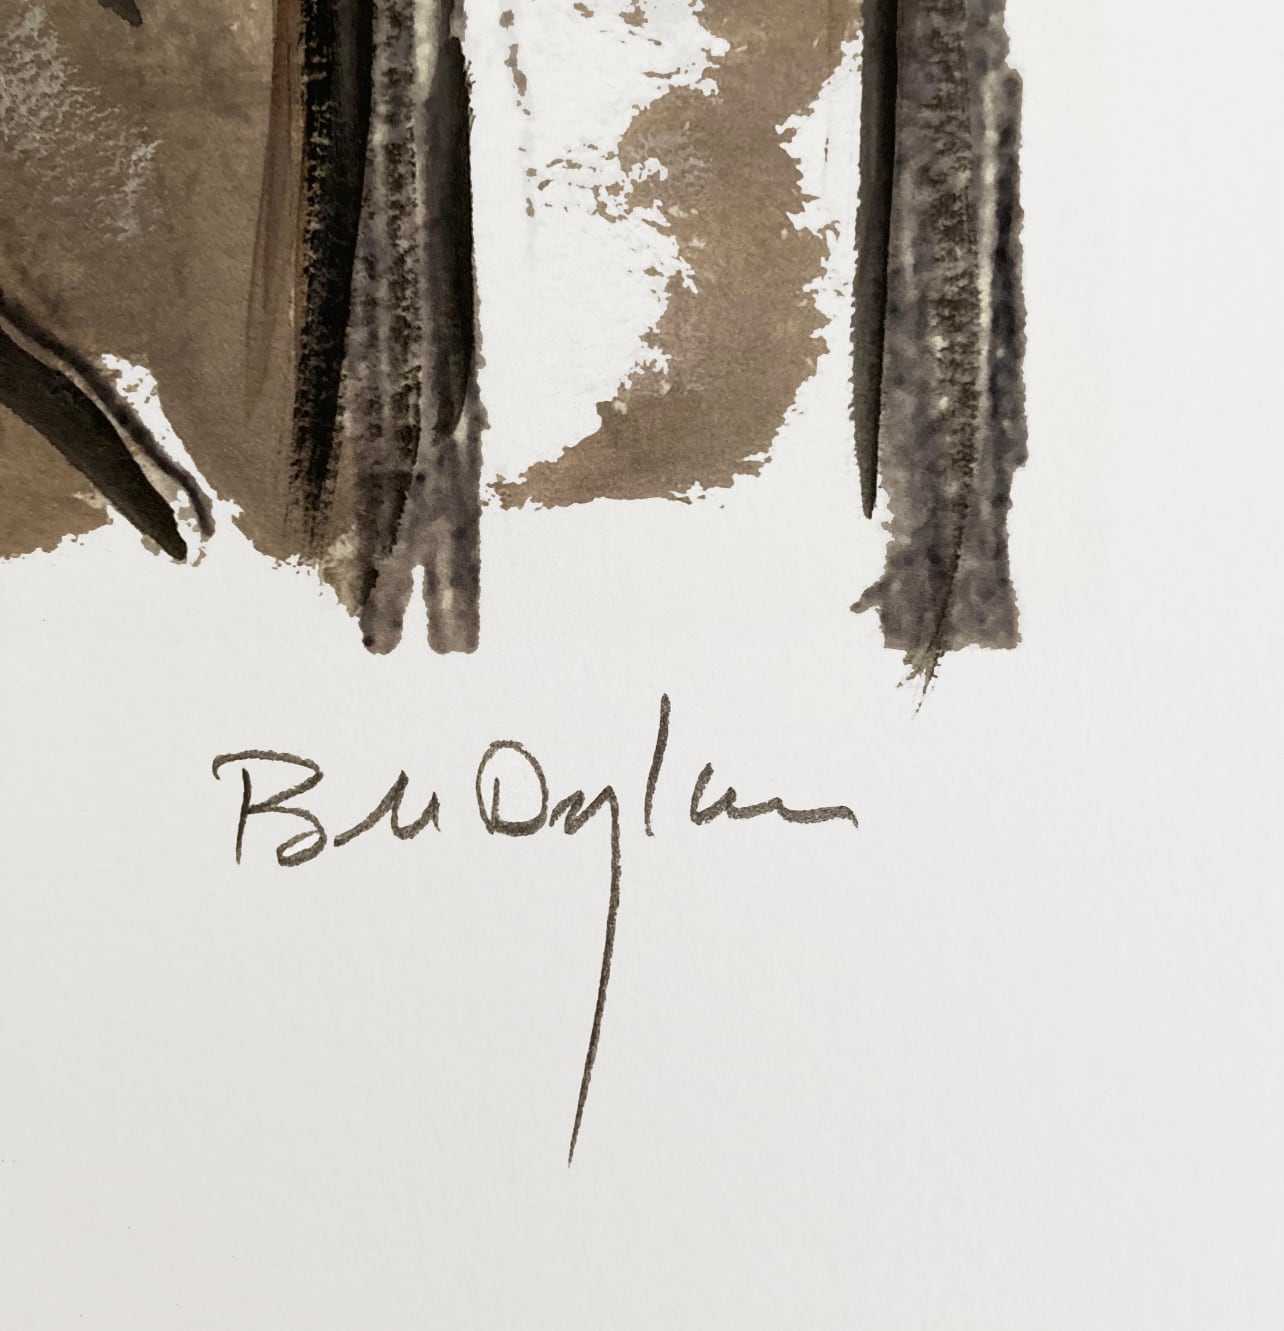 Bob Dylan - Man on a Bridge, 2008